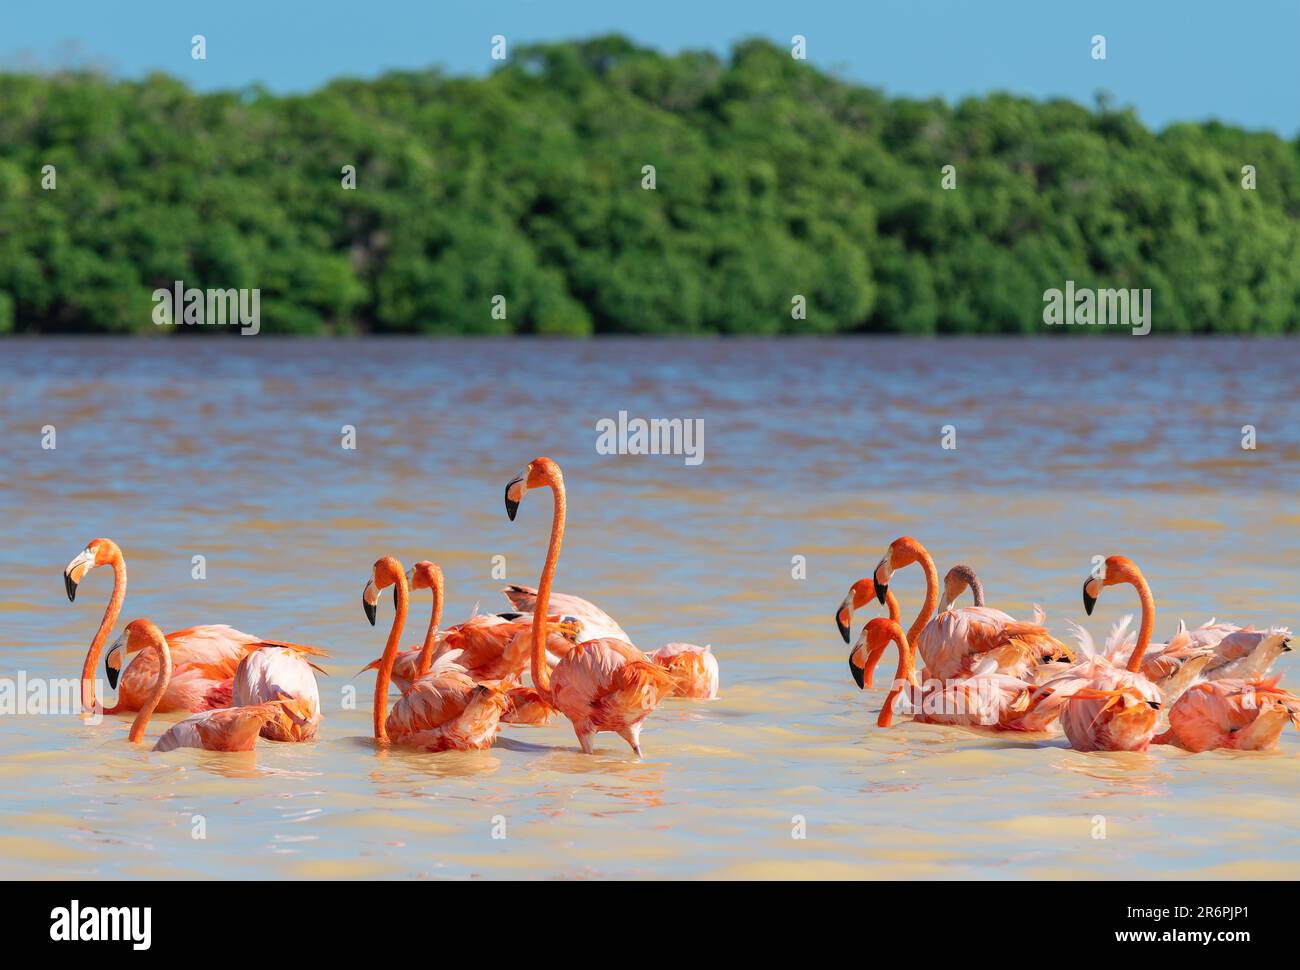 Flamingo américain (Phoenicopterus ruber), Réserve de biosphère de Ria Celestun, Yucatan, Mexique. Banque D'Images